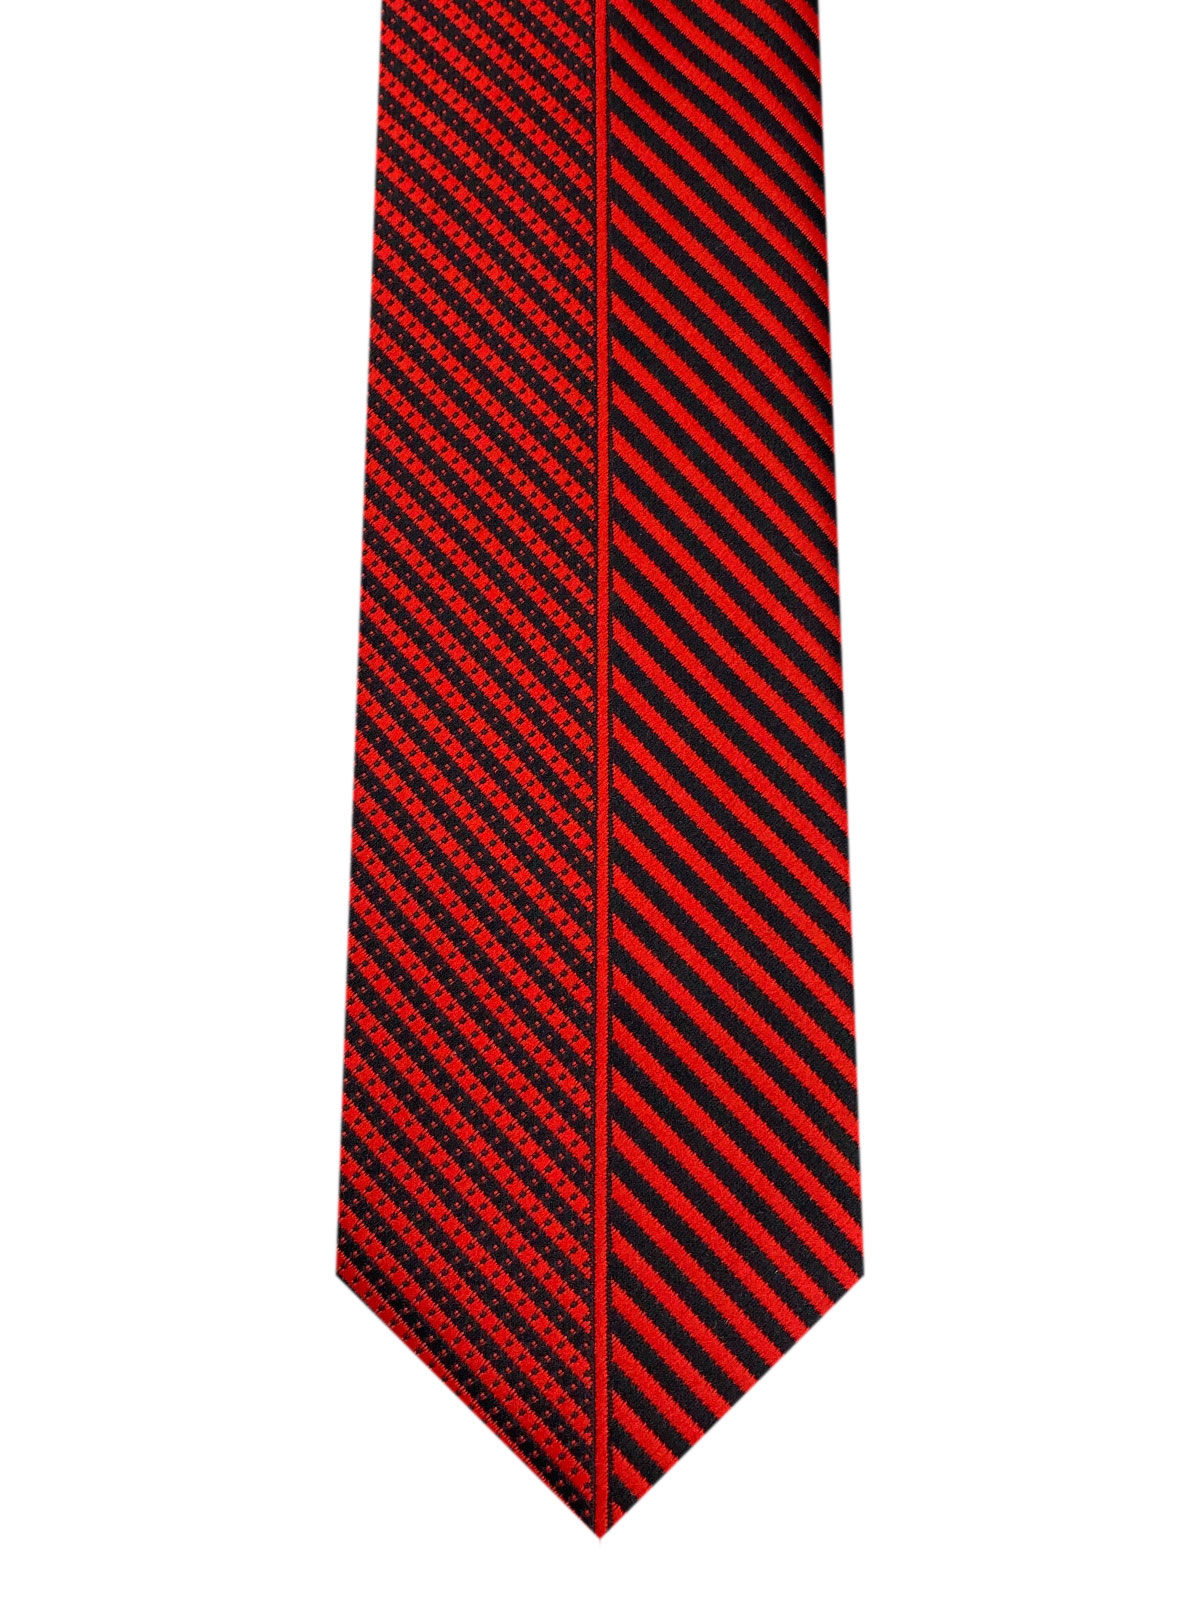 Φωτεινό κόκκινο ριγέ γραβάτα - 10206 - € 14.06 img2